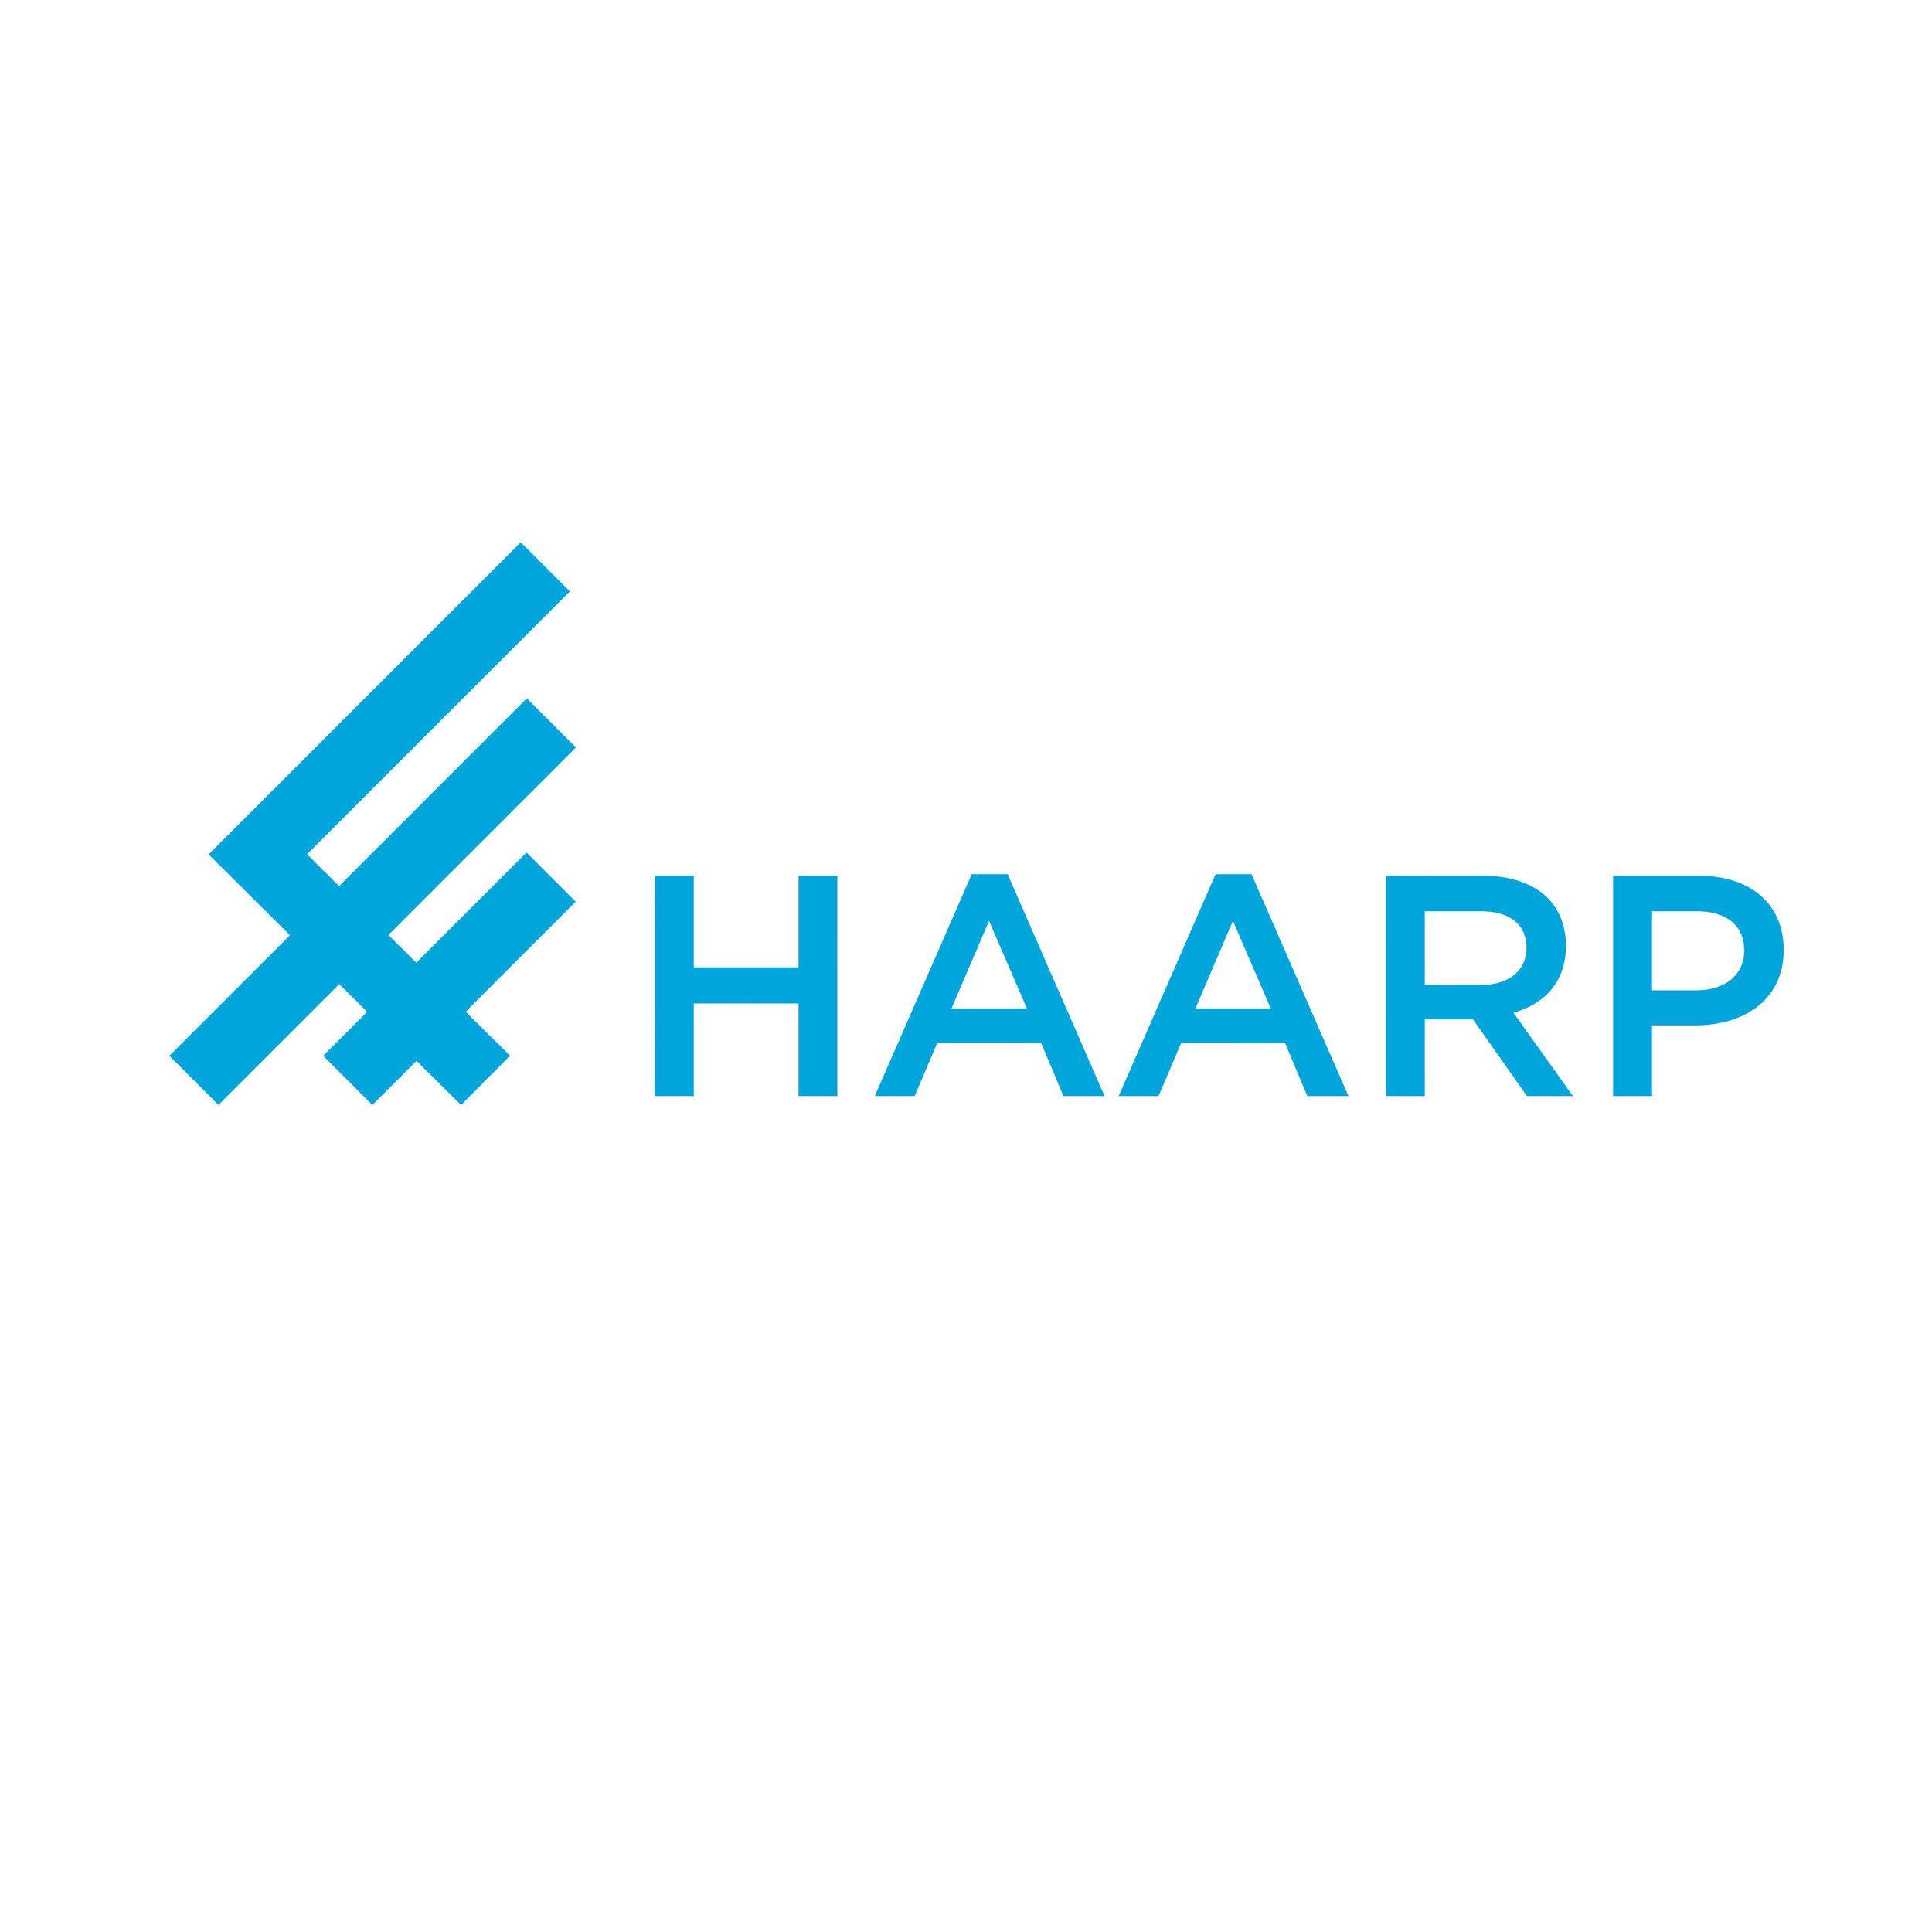 HAARP Logo - HAARP